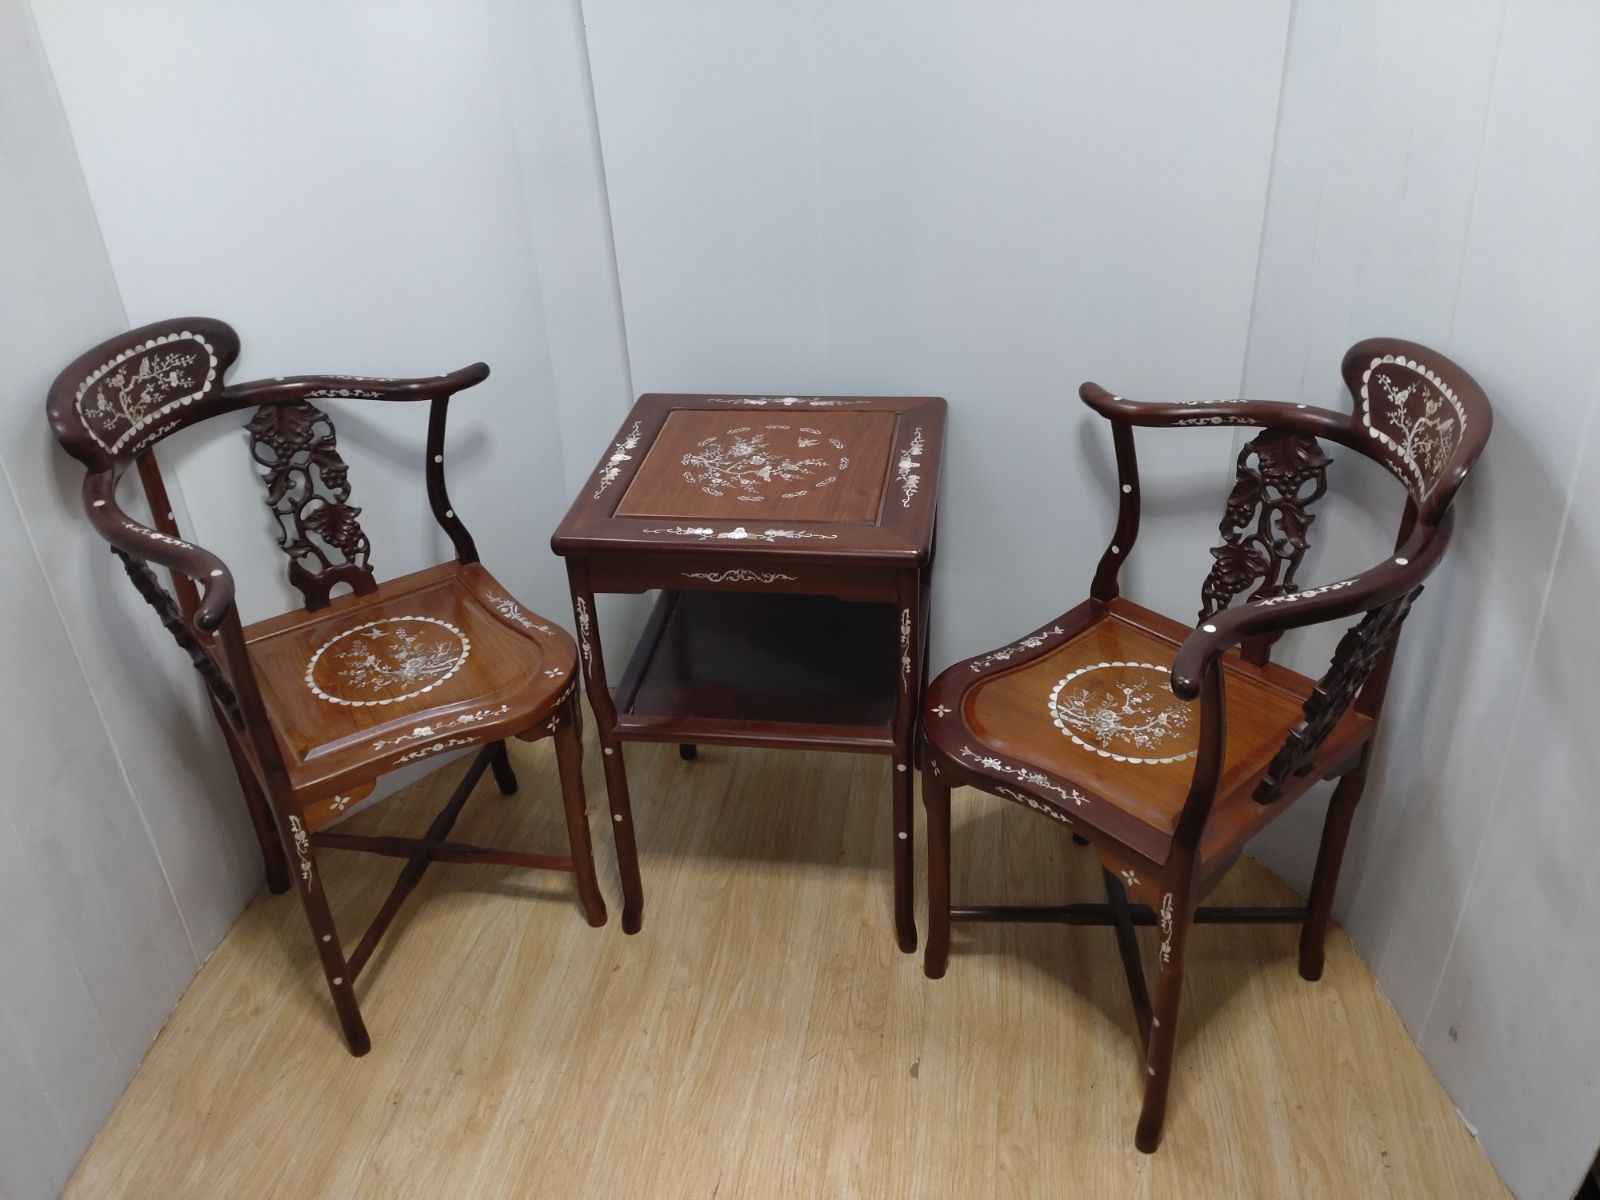 螺鈿細工 唐木家具 花梨 らでん チェア サイドテーブル 中国家具 伝統 